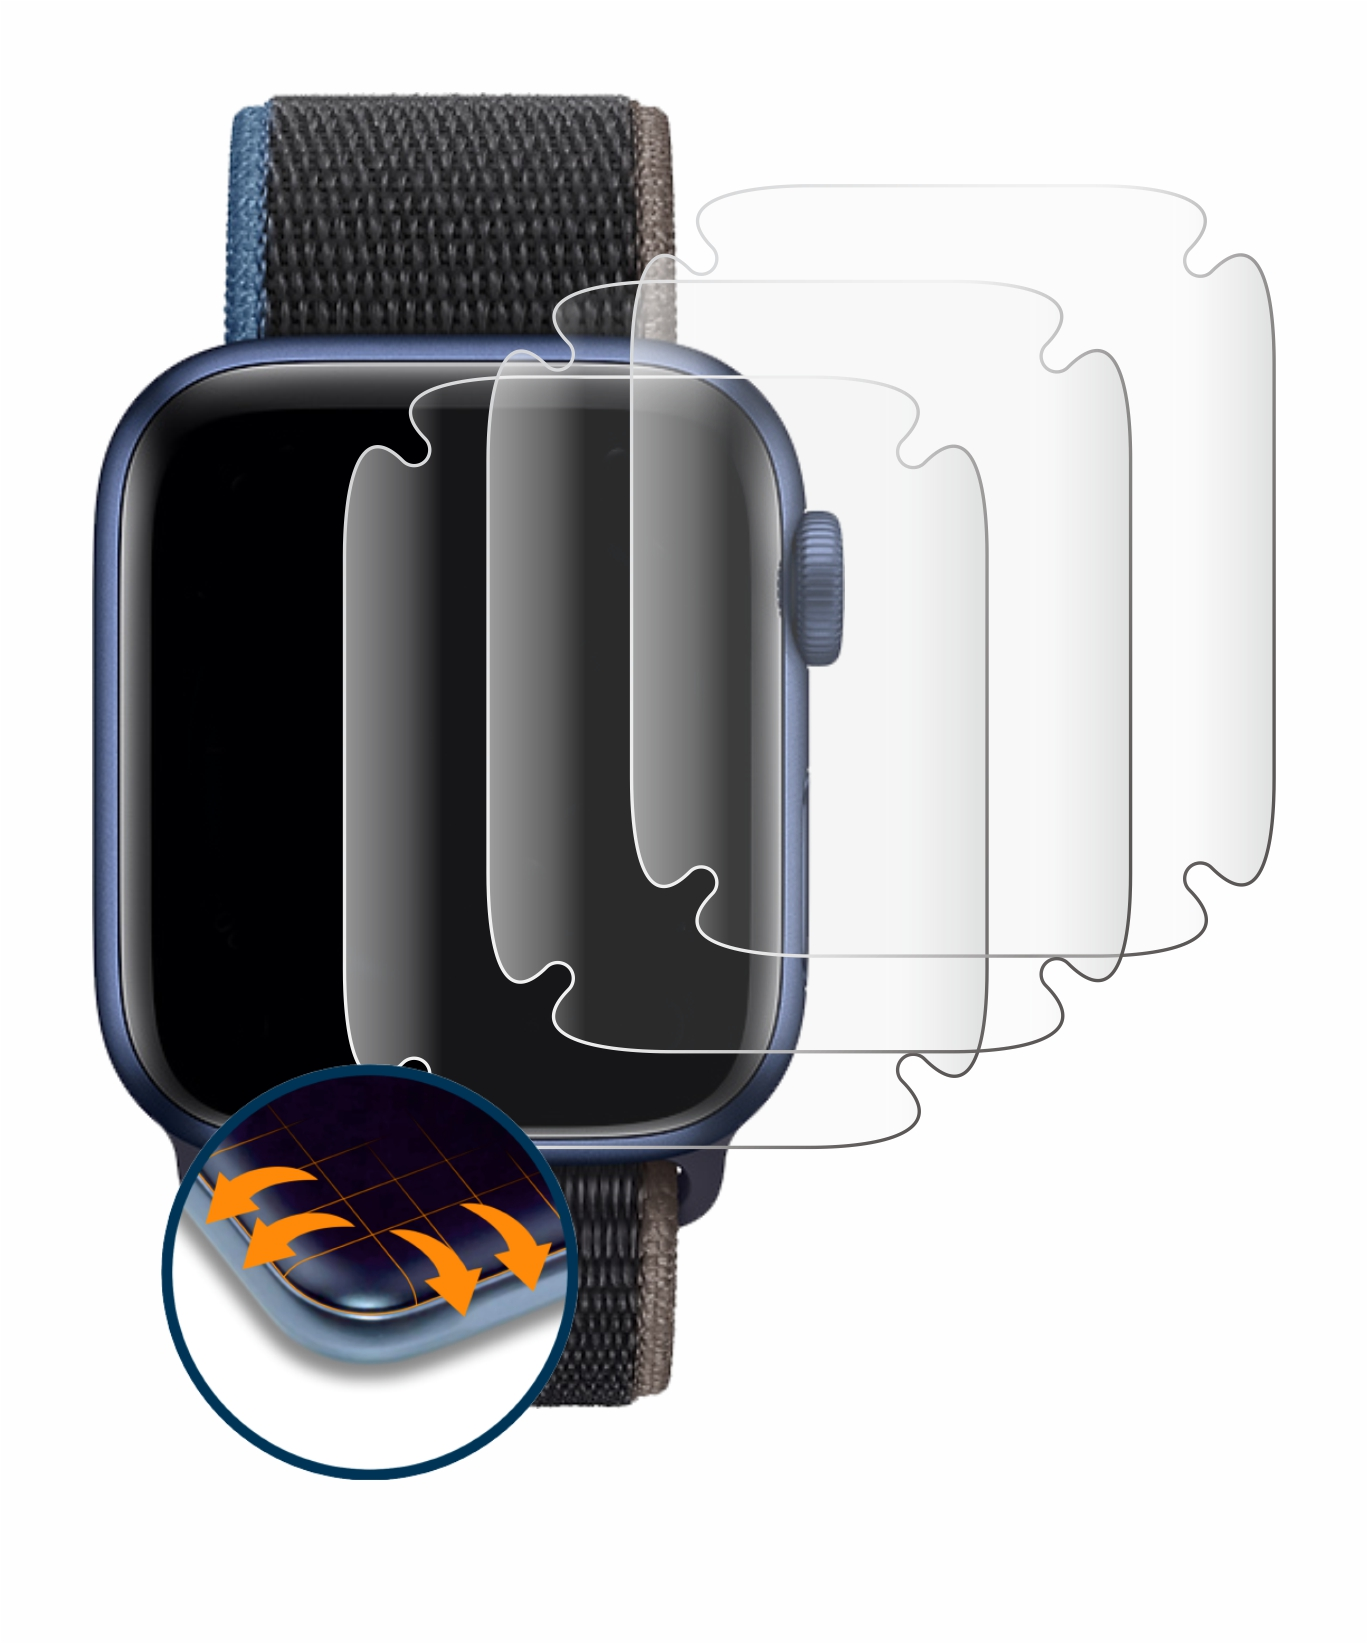 Watch Series (44 Flex Apple 4x Full-Cover 6 Curved 3D Schutzfolie(für mm)) SAVVIES